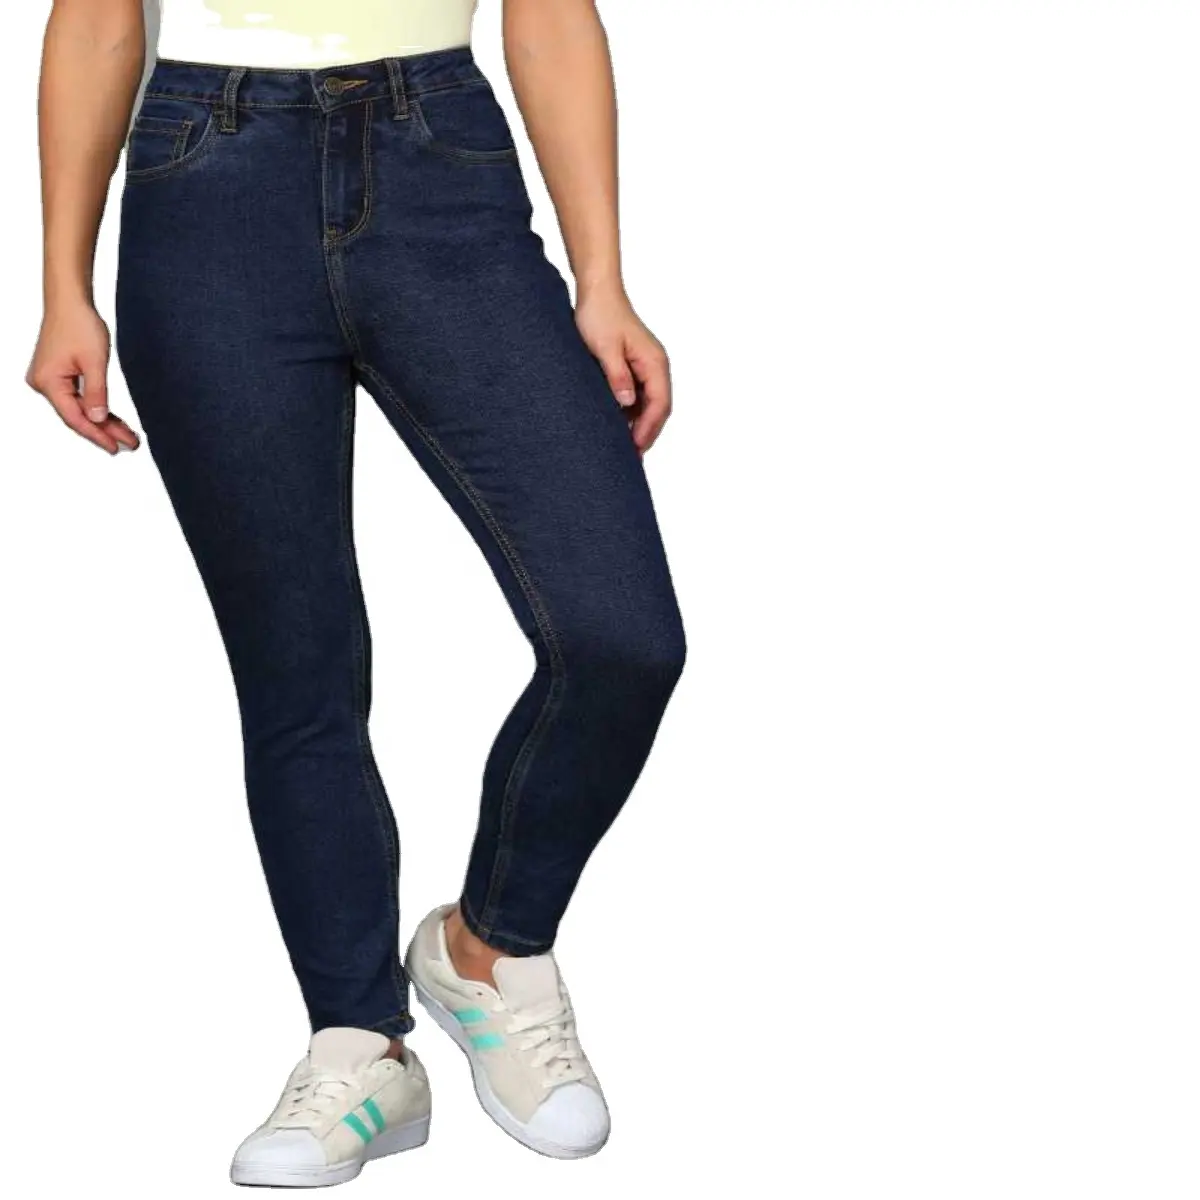 سروال جينز نسائي من بنجلاديش, سروال جينز نسائي بتصميم جديد من قماش الدنيم